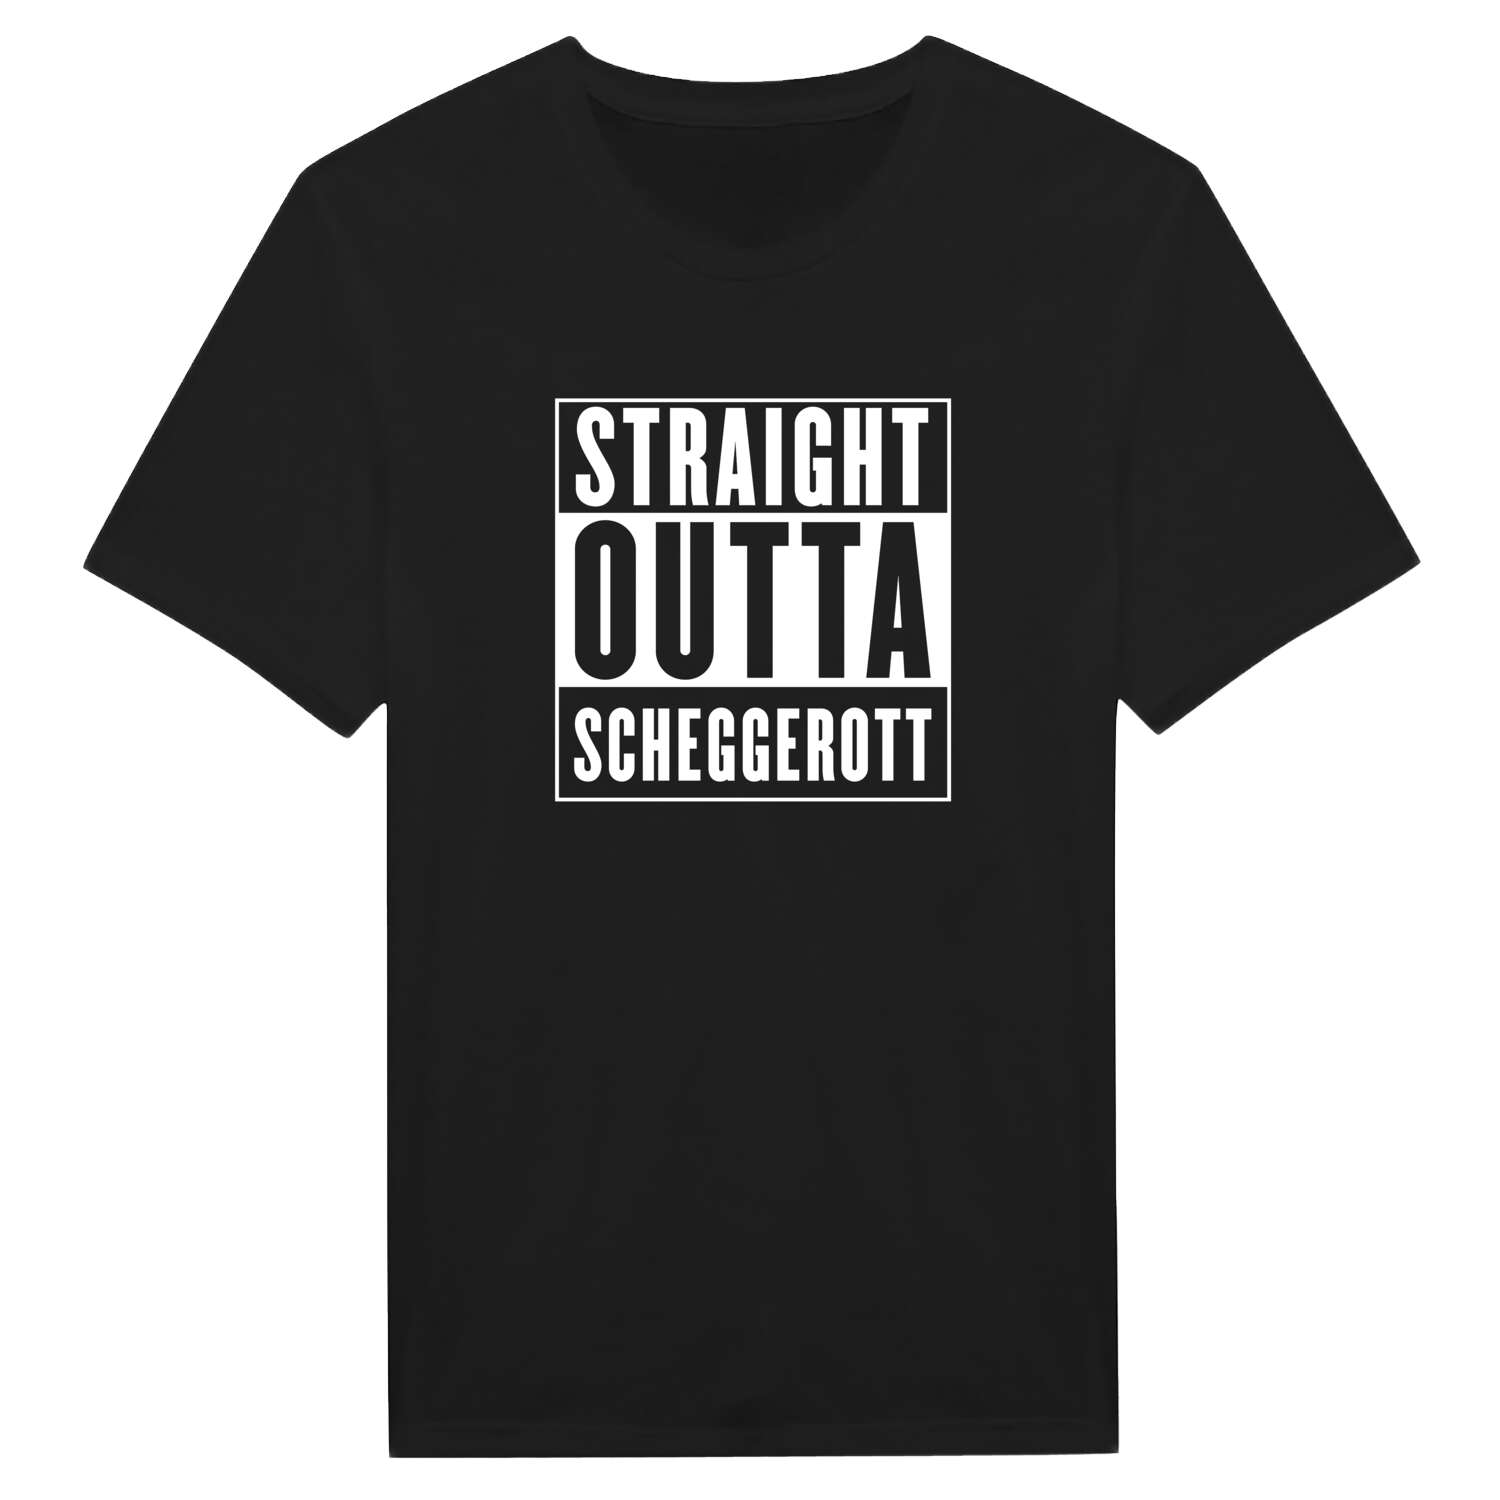 Scheggerott T-Shirt »Straight Outta«